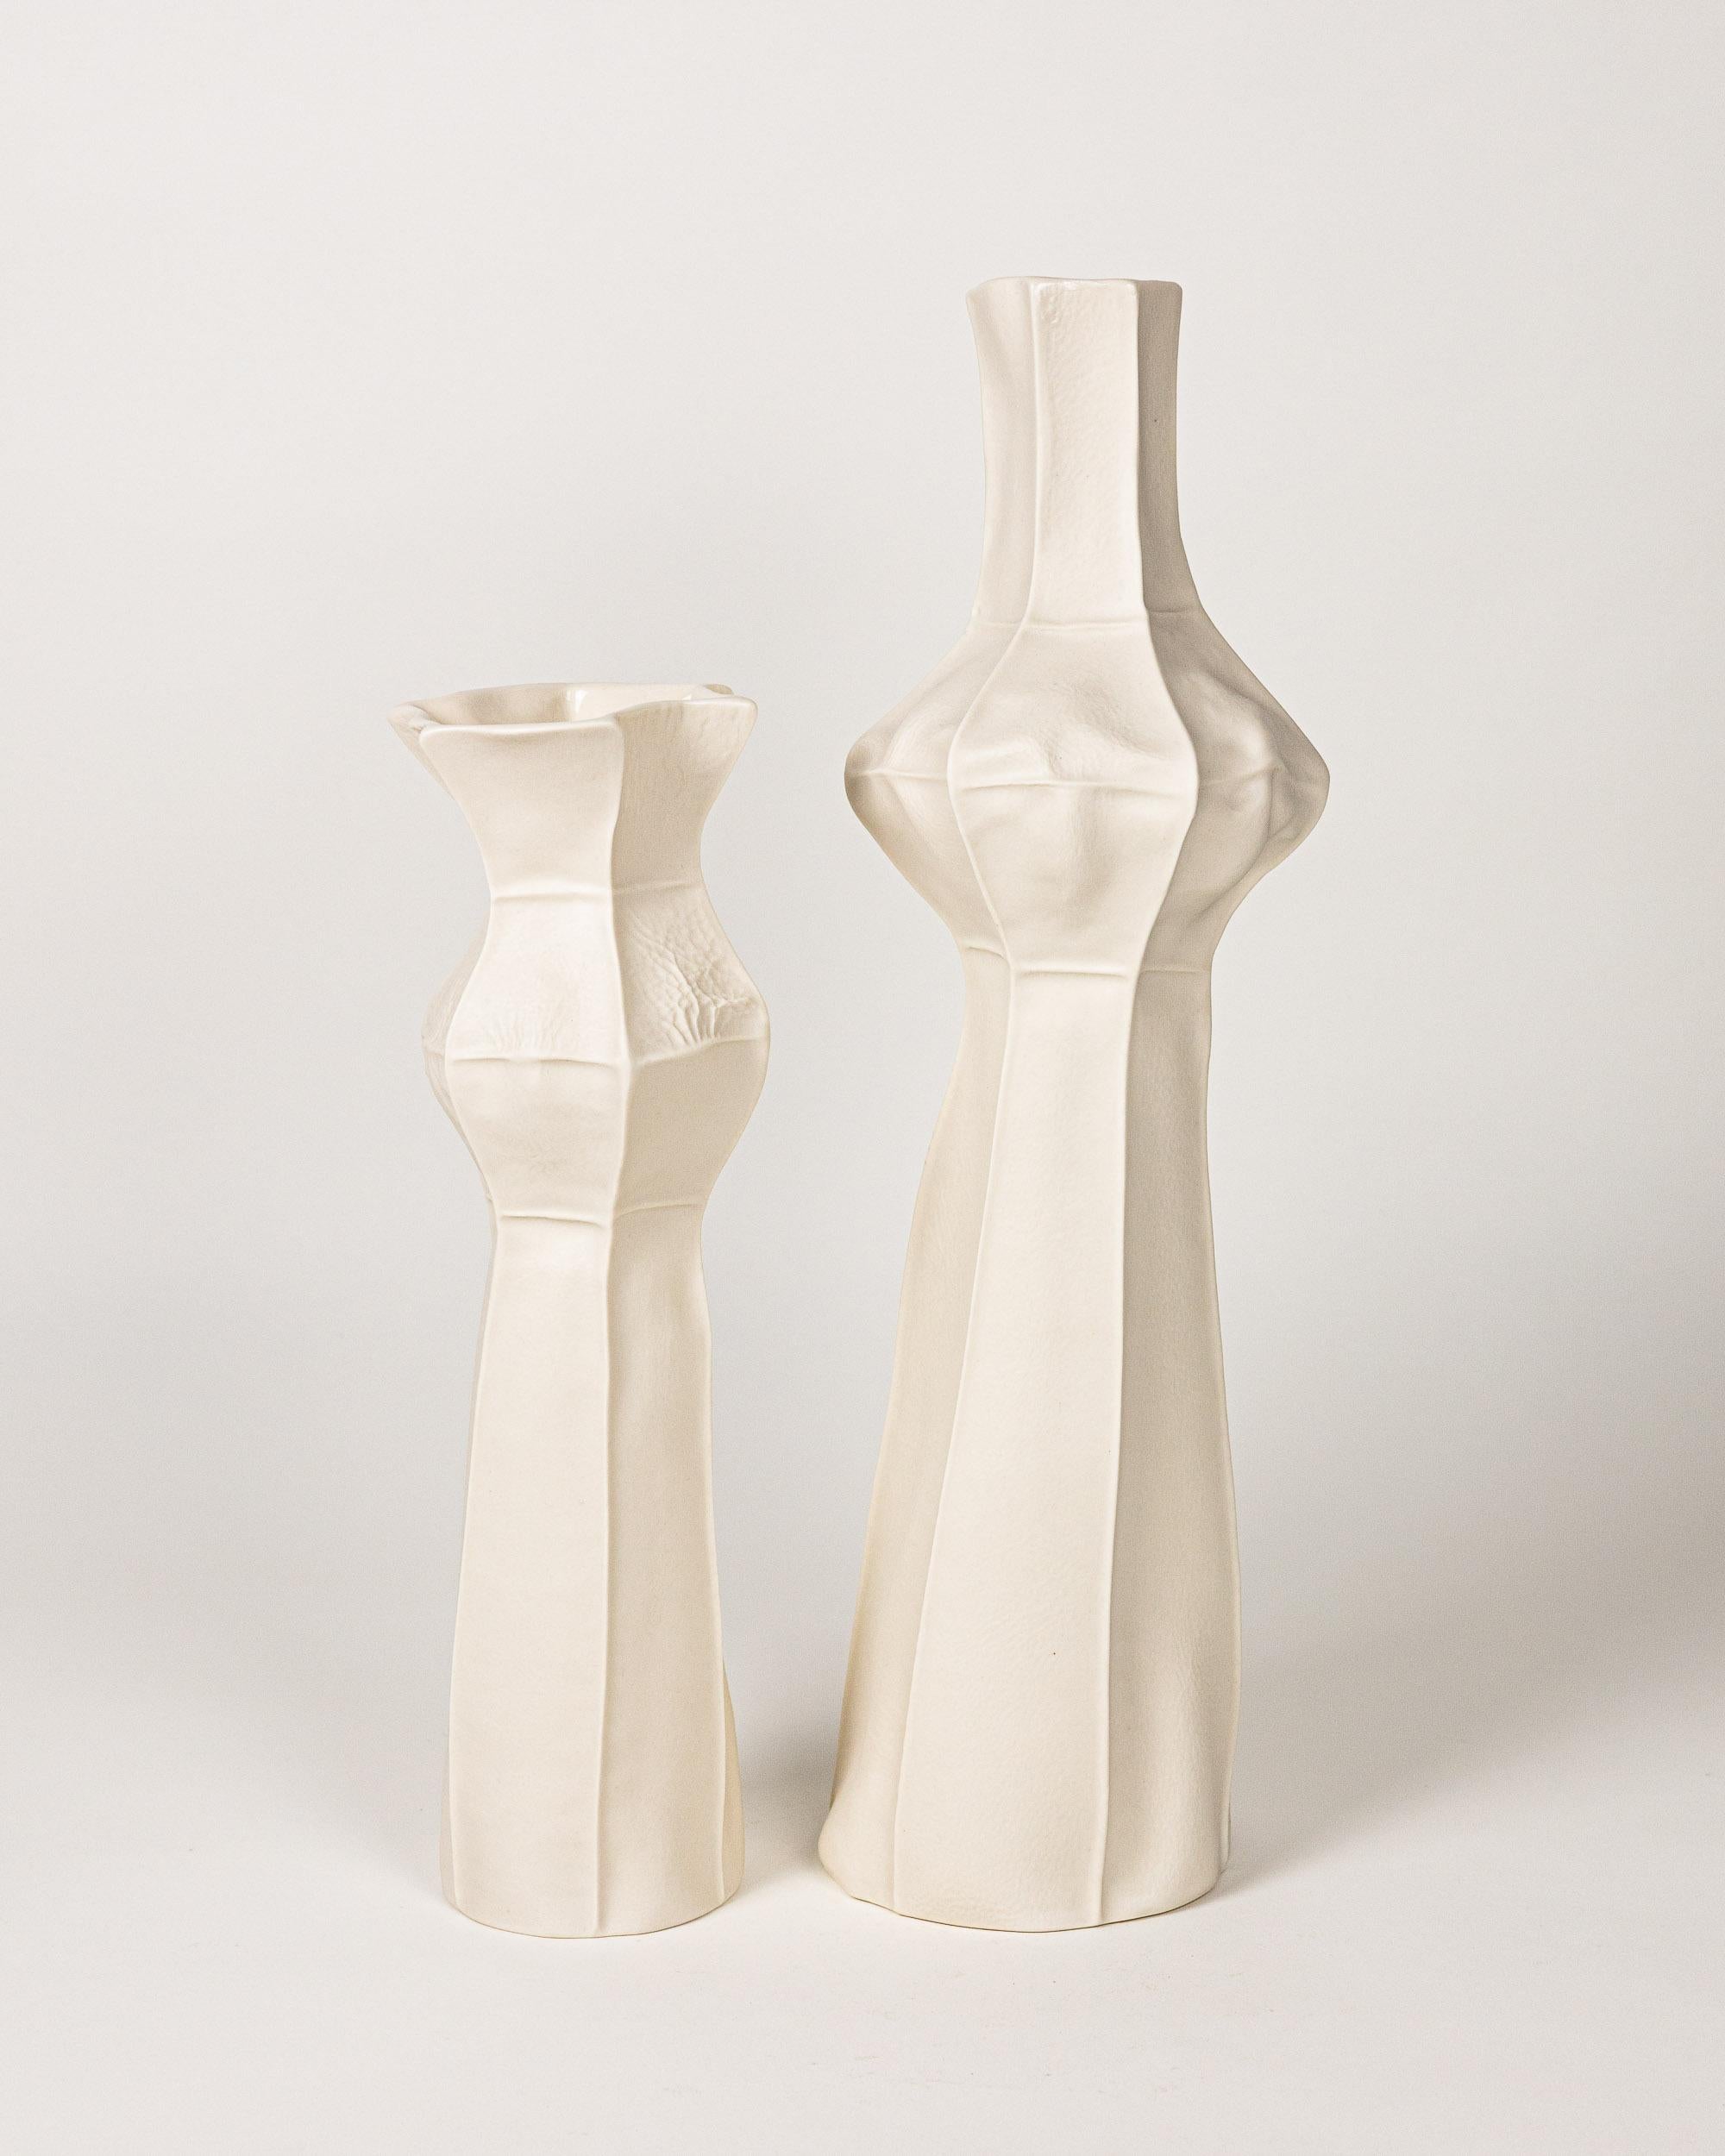 Une paire de vases en porcelaine, hauts et tactiles, avec une surface extérieure texturée en cuir et un intérieur émaillé transparent. Cette série spécifique a été inspirée par les gratte-ciel de la ville. 

En raison du processus de production,